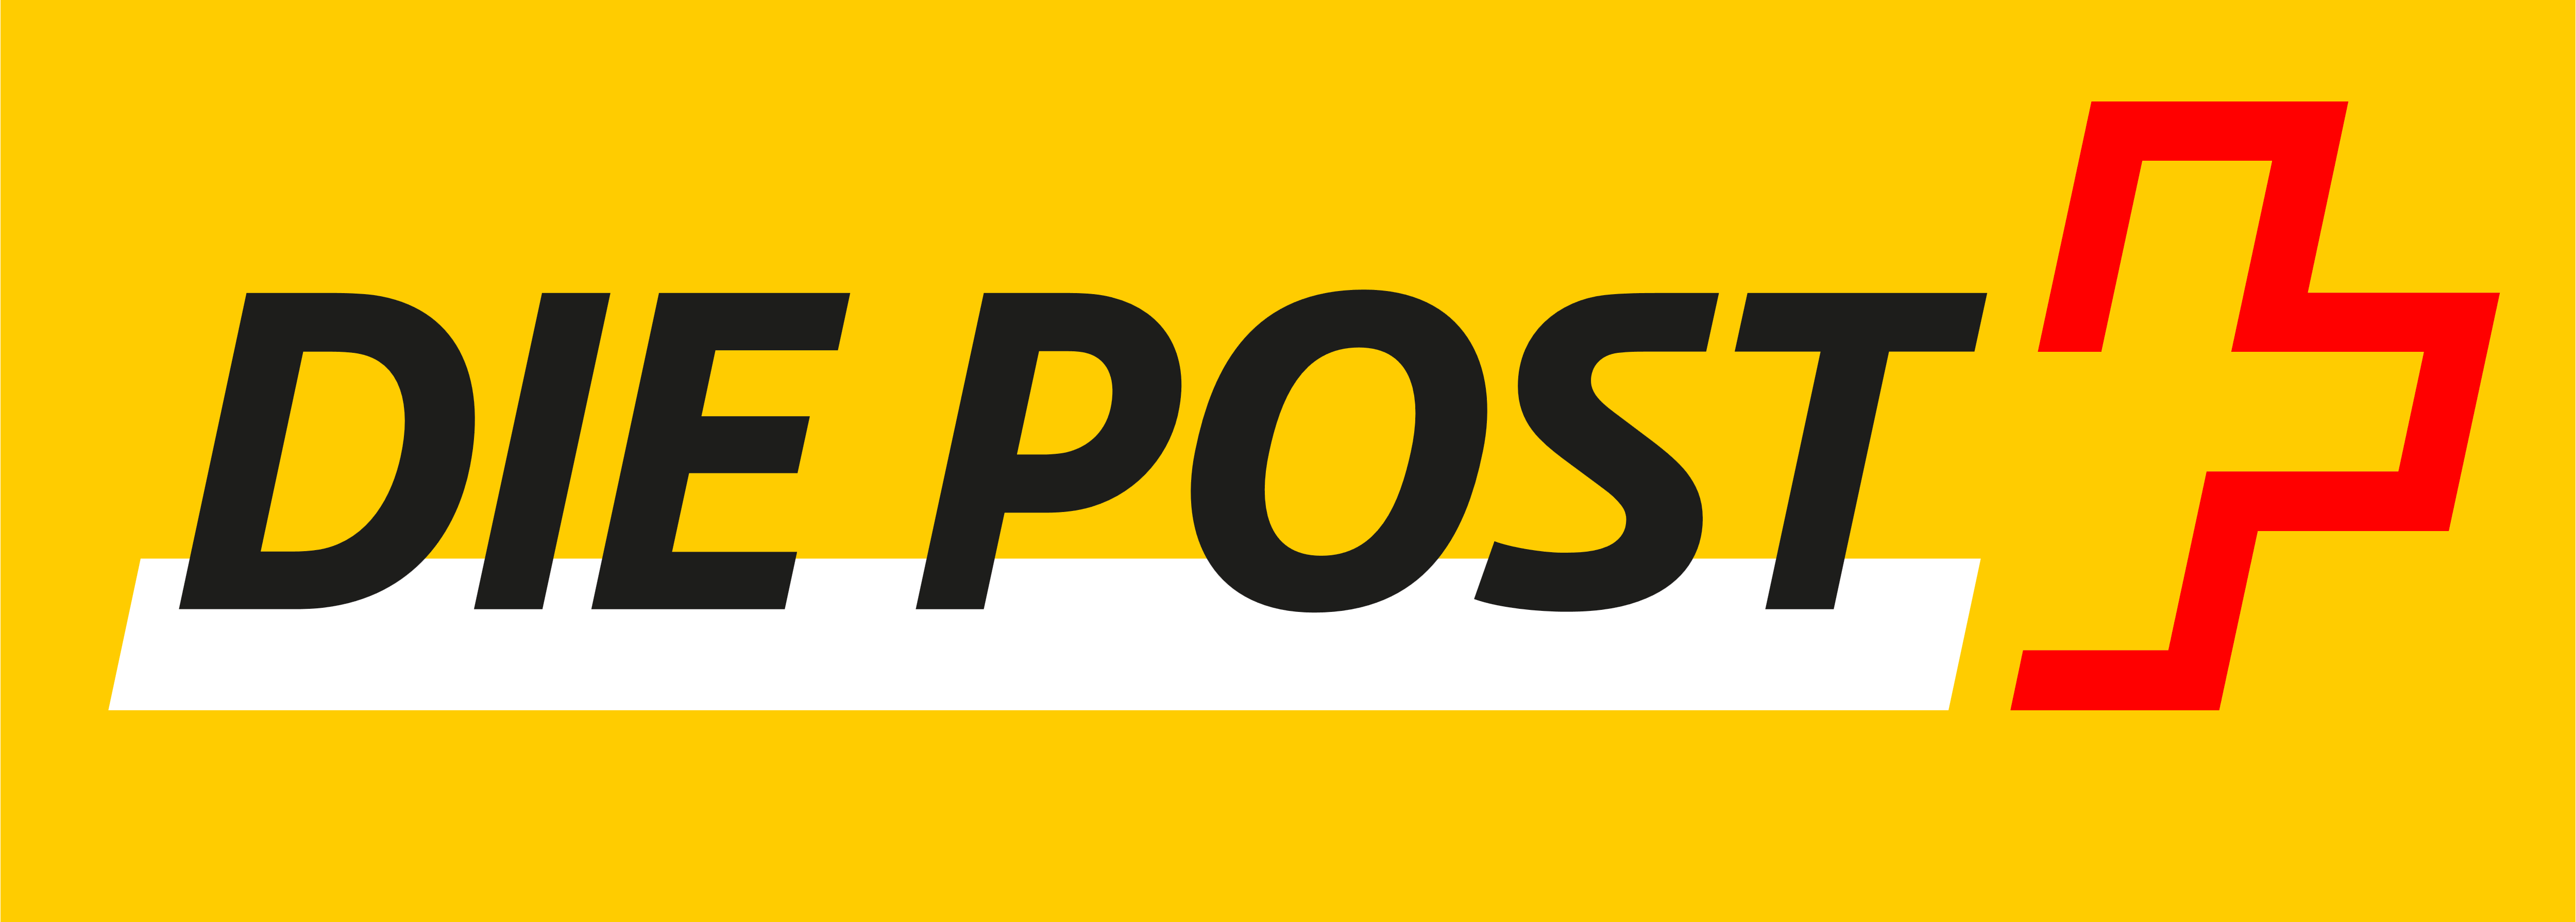 Die Post – Logos Download